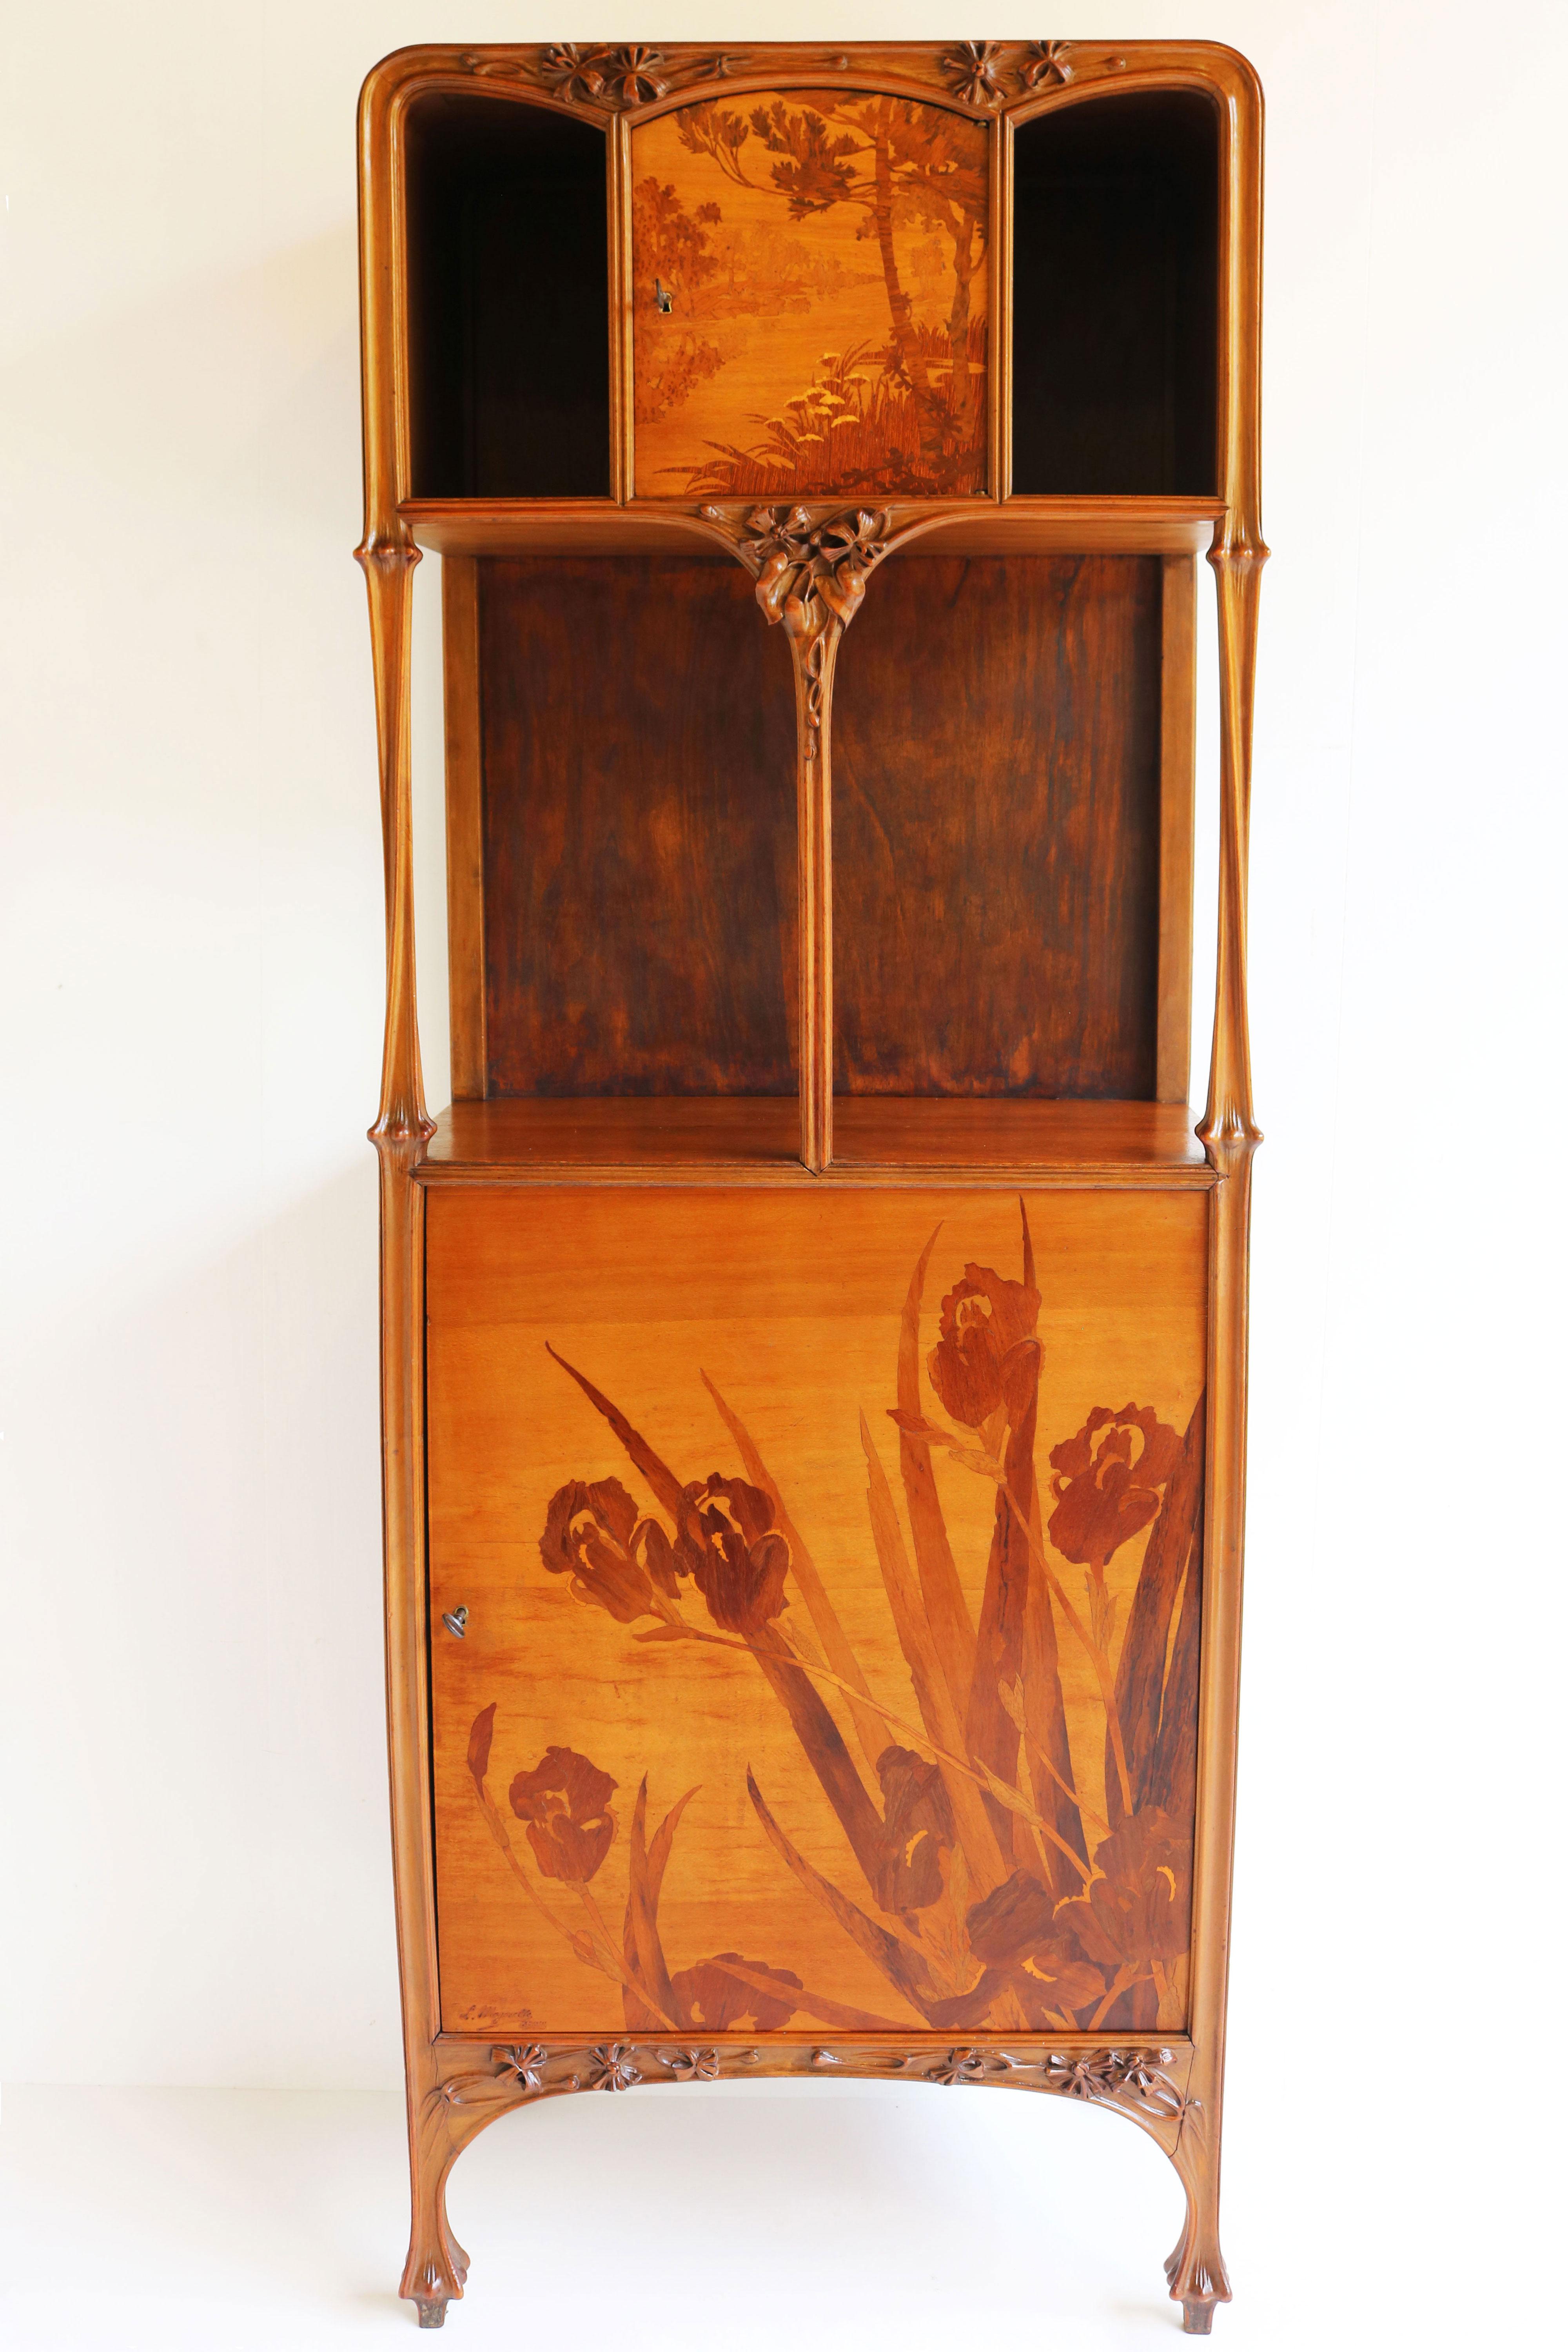 Exceptional Art Nouveau Cabinet by Louis Majorelle 1900 French Antique Nancy For Sale 11